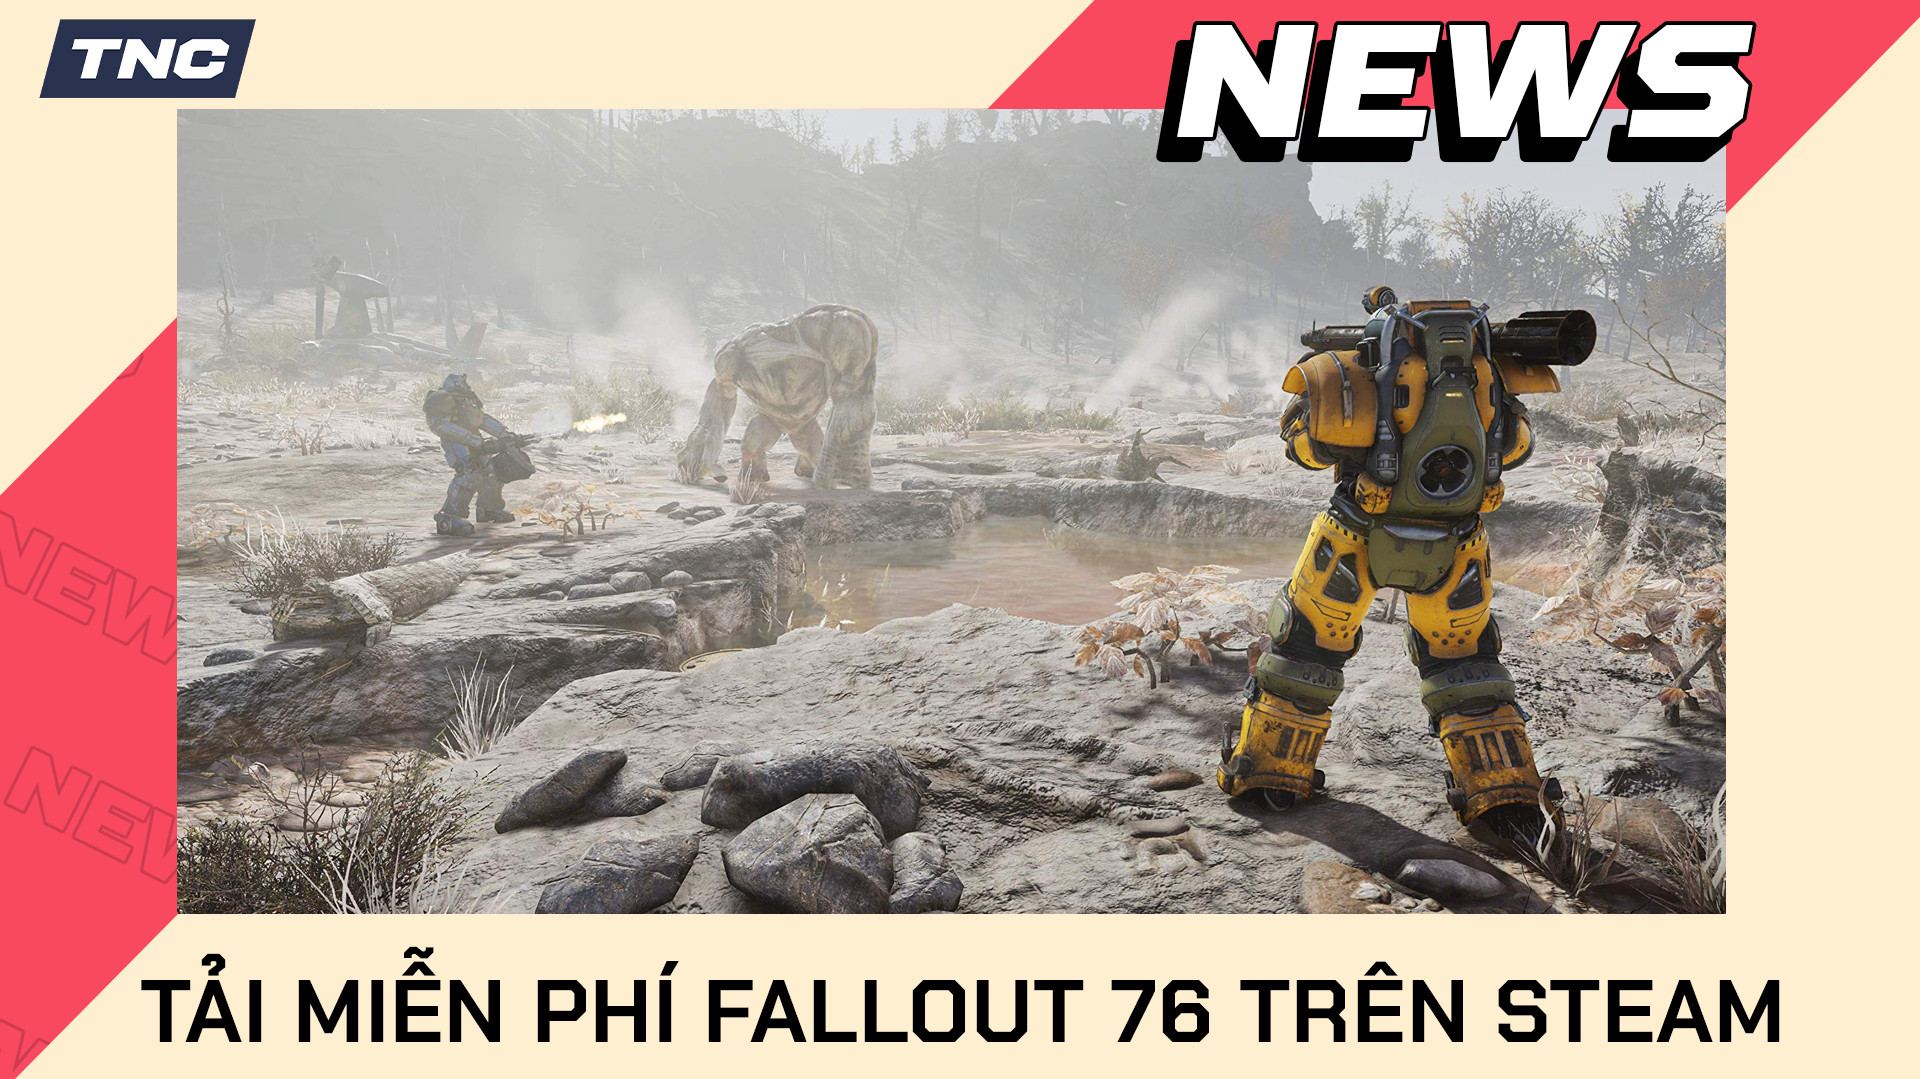 Tải miễn phí phần mới nhất của bom tấn Fallout 76 trên Steam